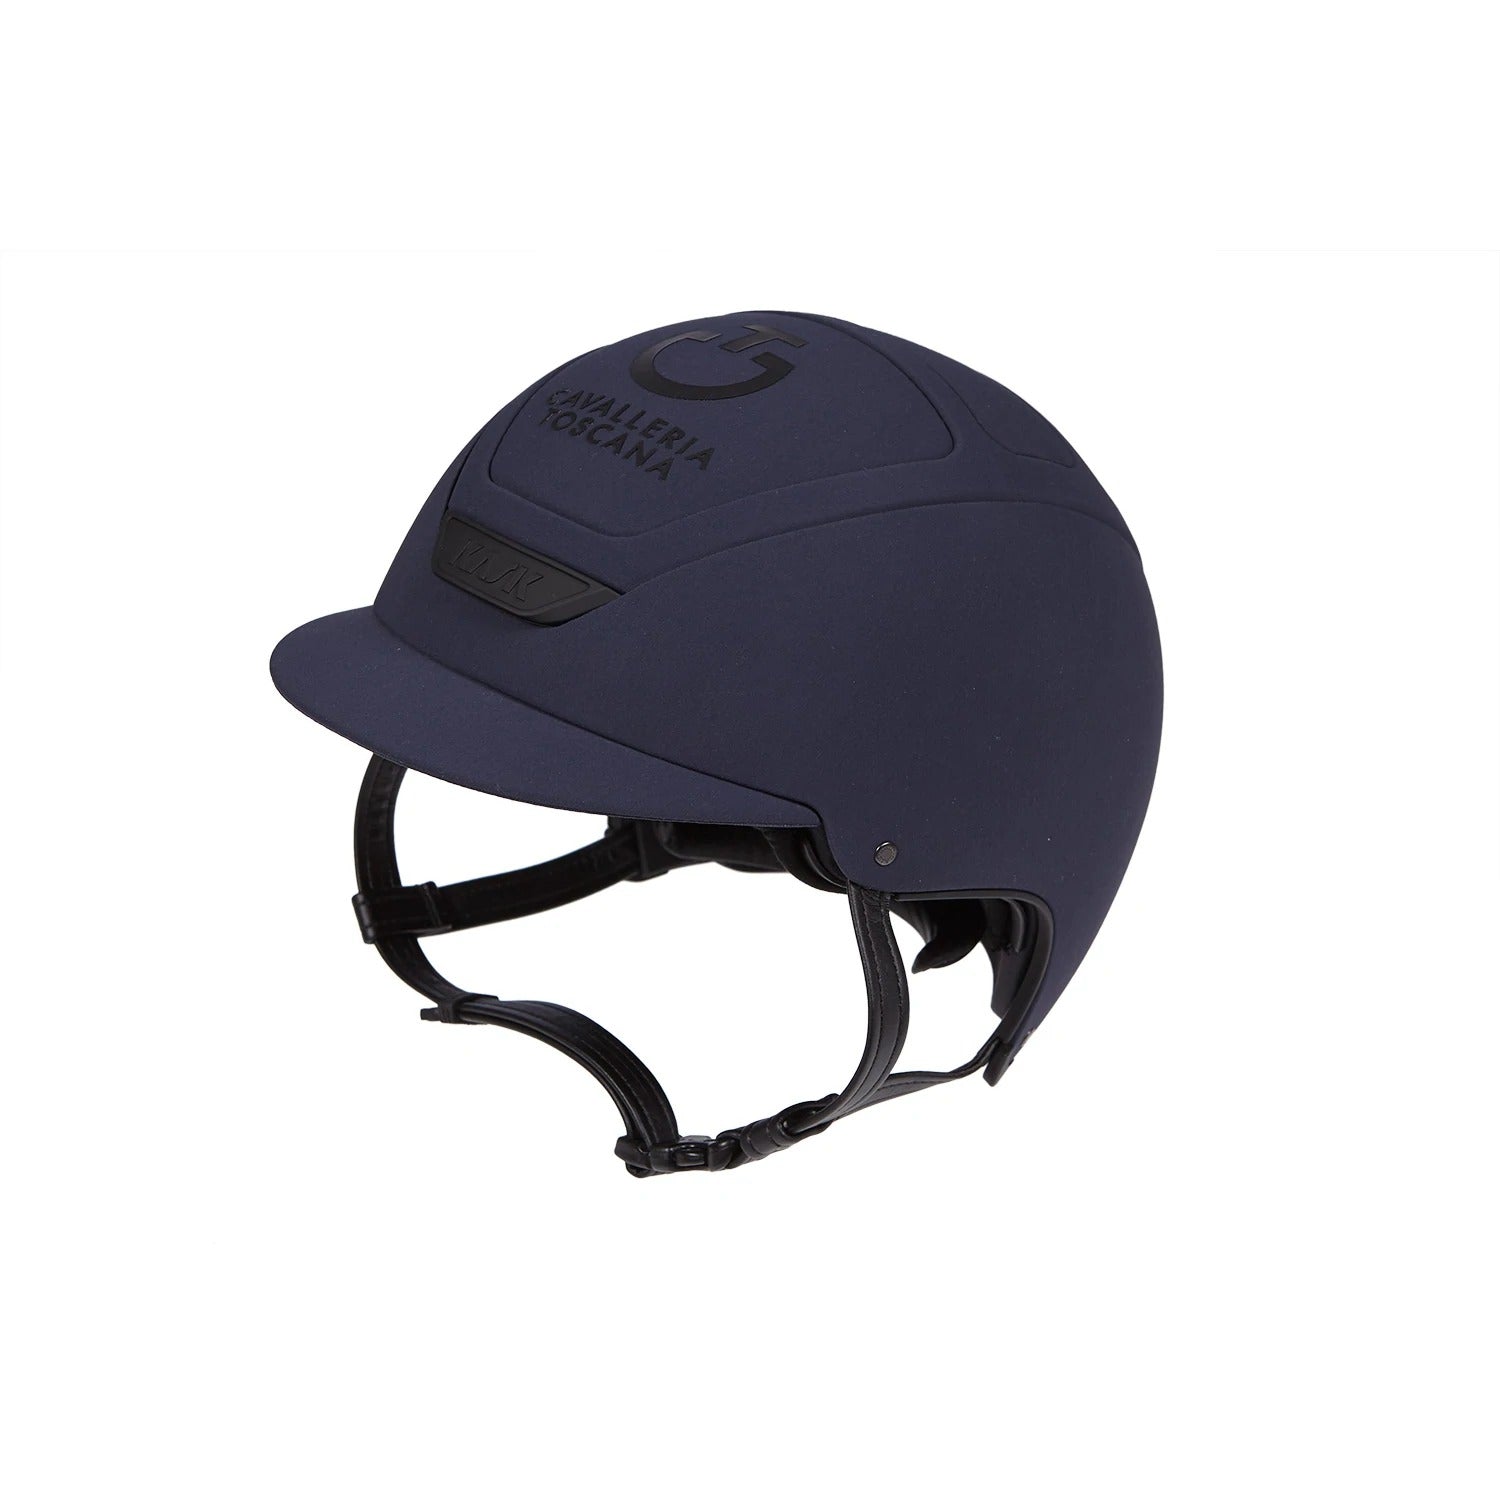 Cavalleria Toscana X Kask Dogma Helmet Navy